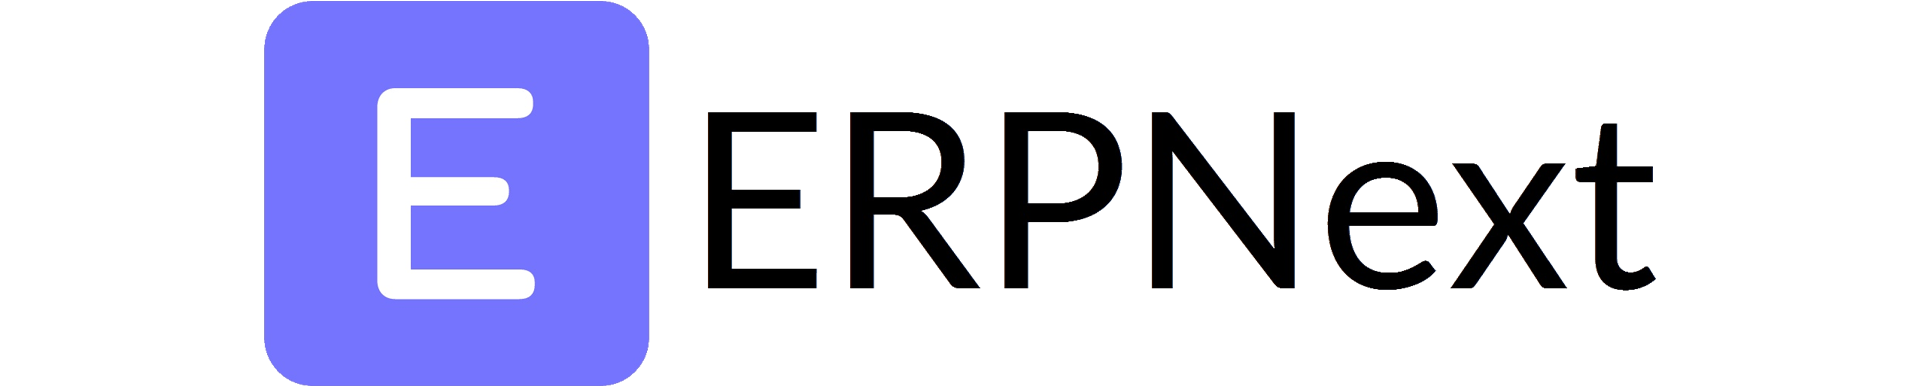 Installing ERPNext 14 on Debian 12